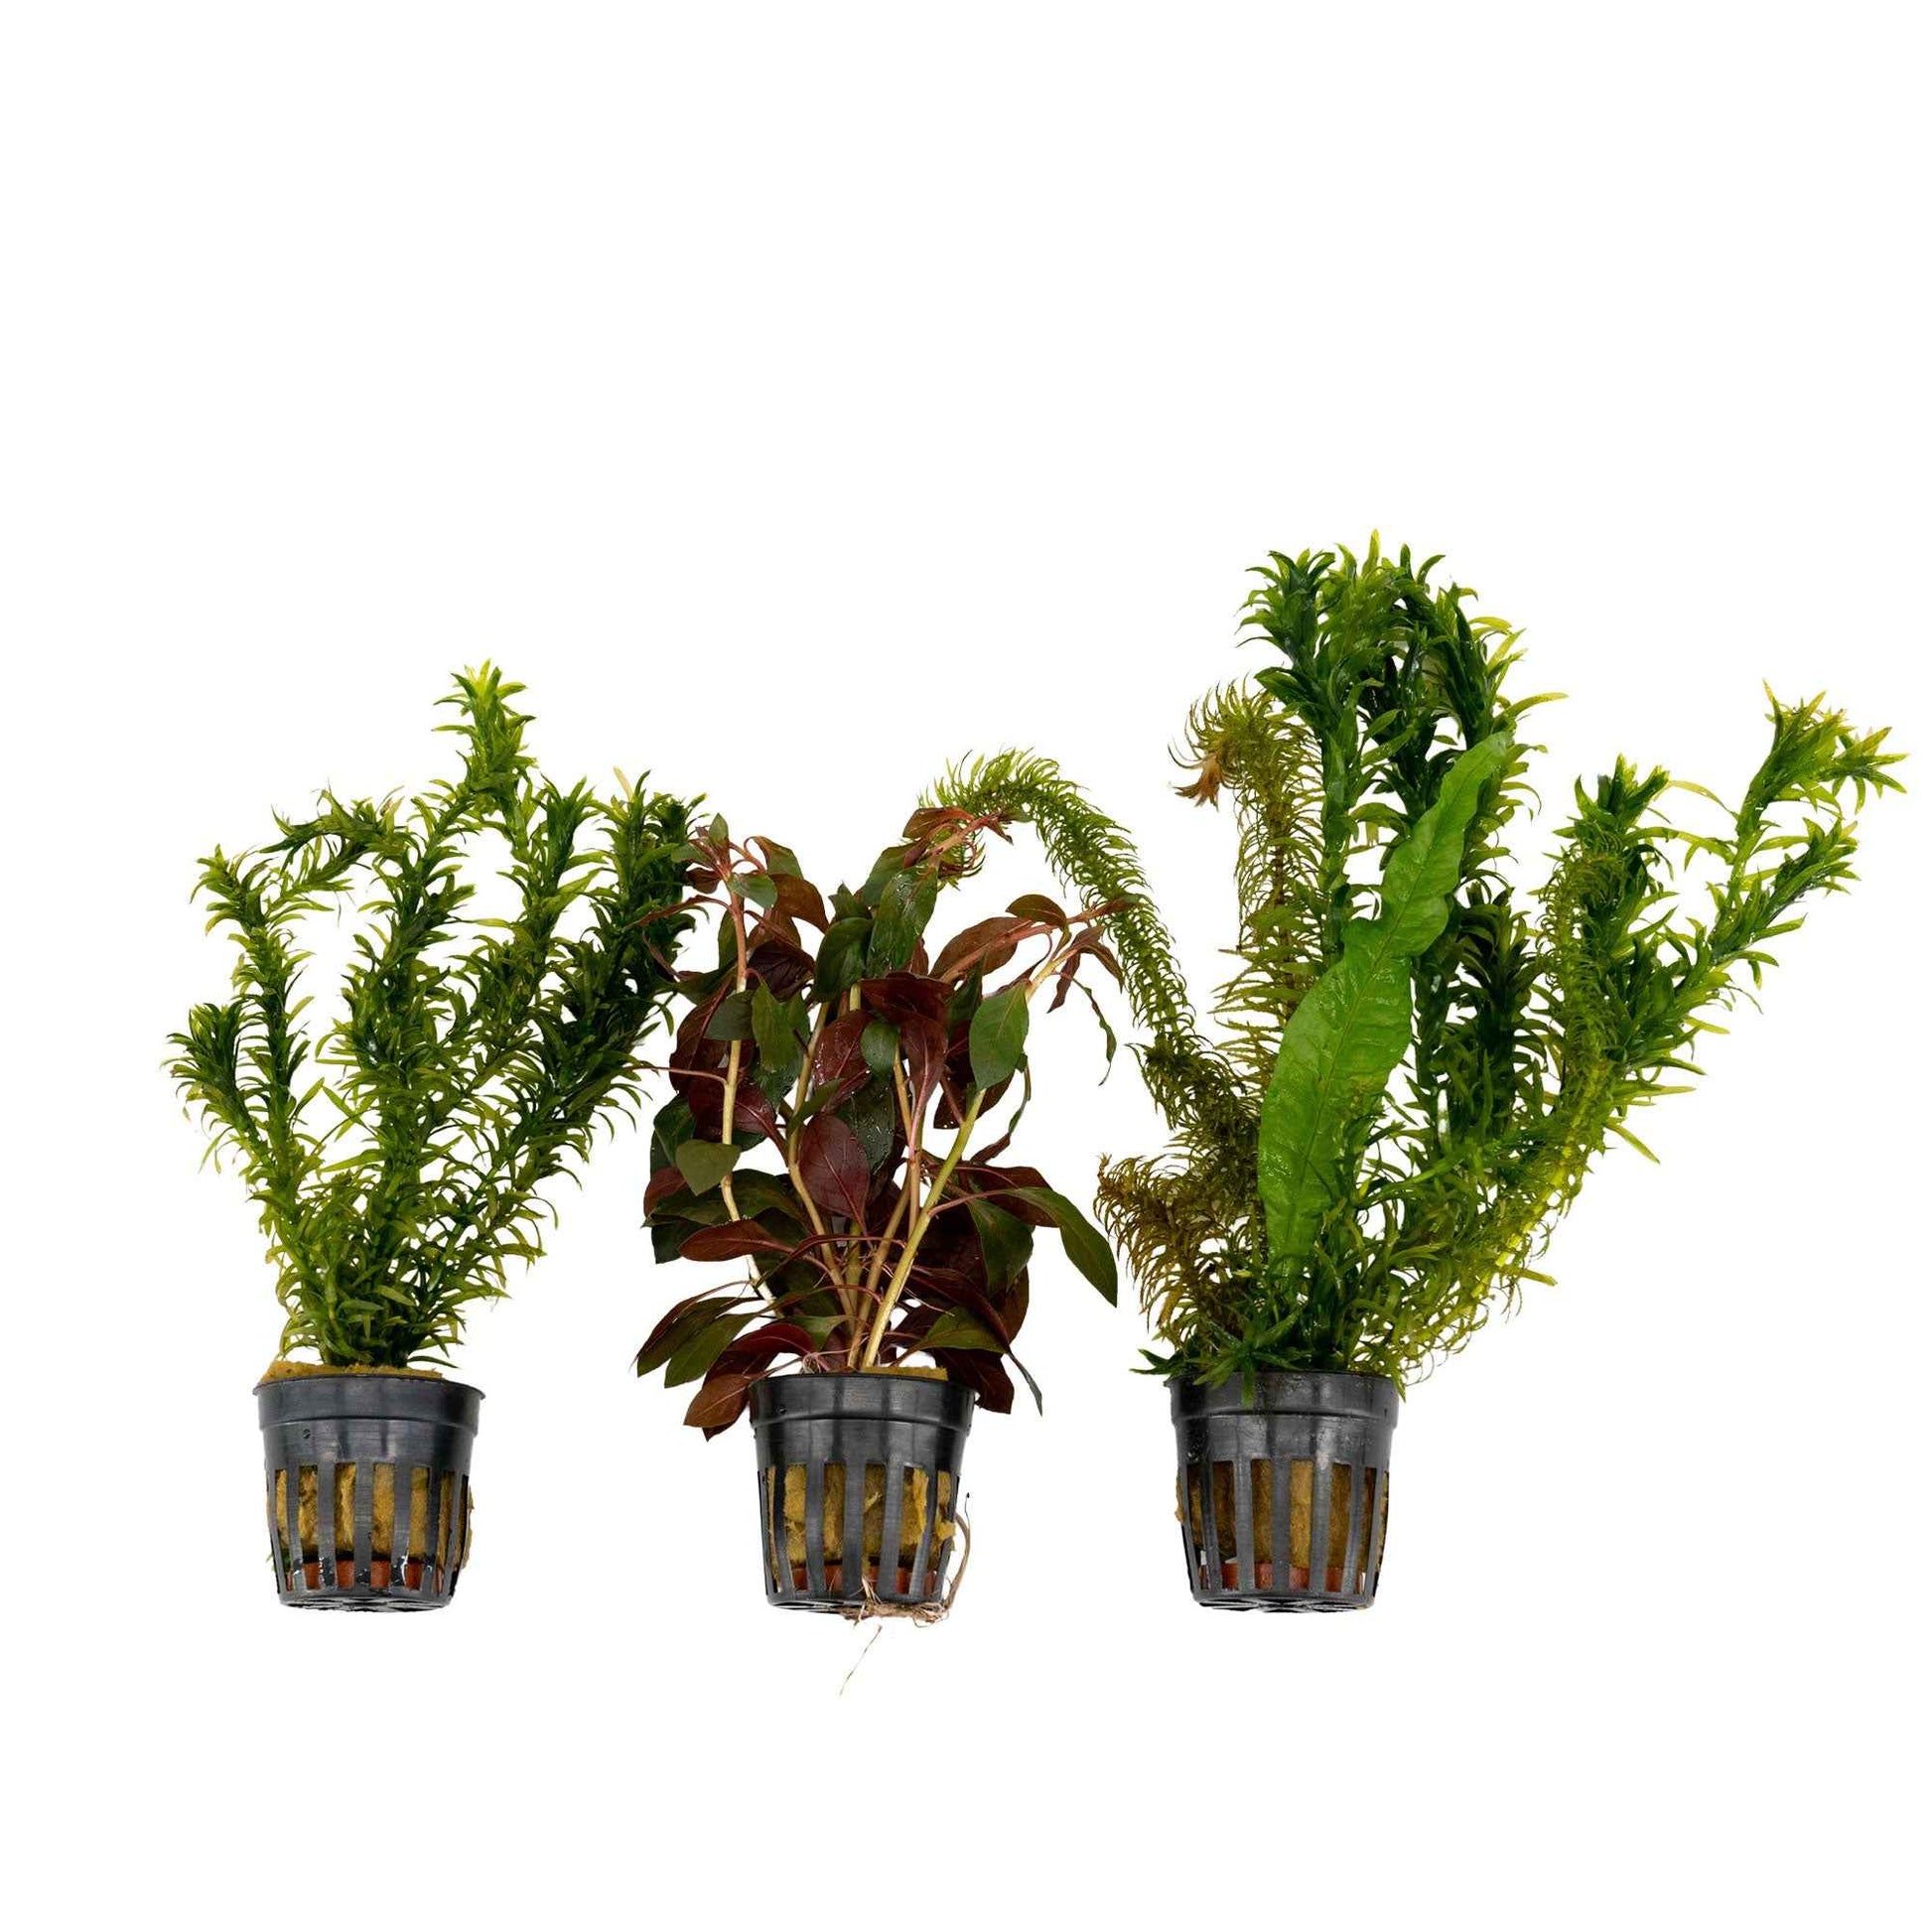 3x Aquariumpflanzen - Mischung 'Kühle Farben' - Aquariumpflanzen